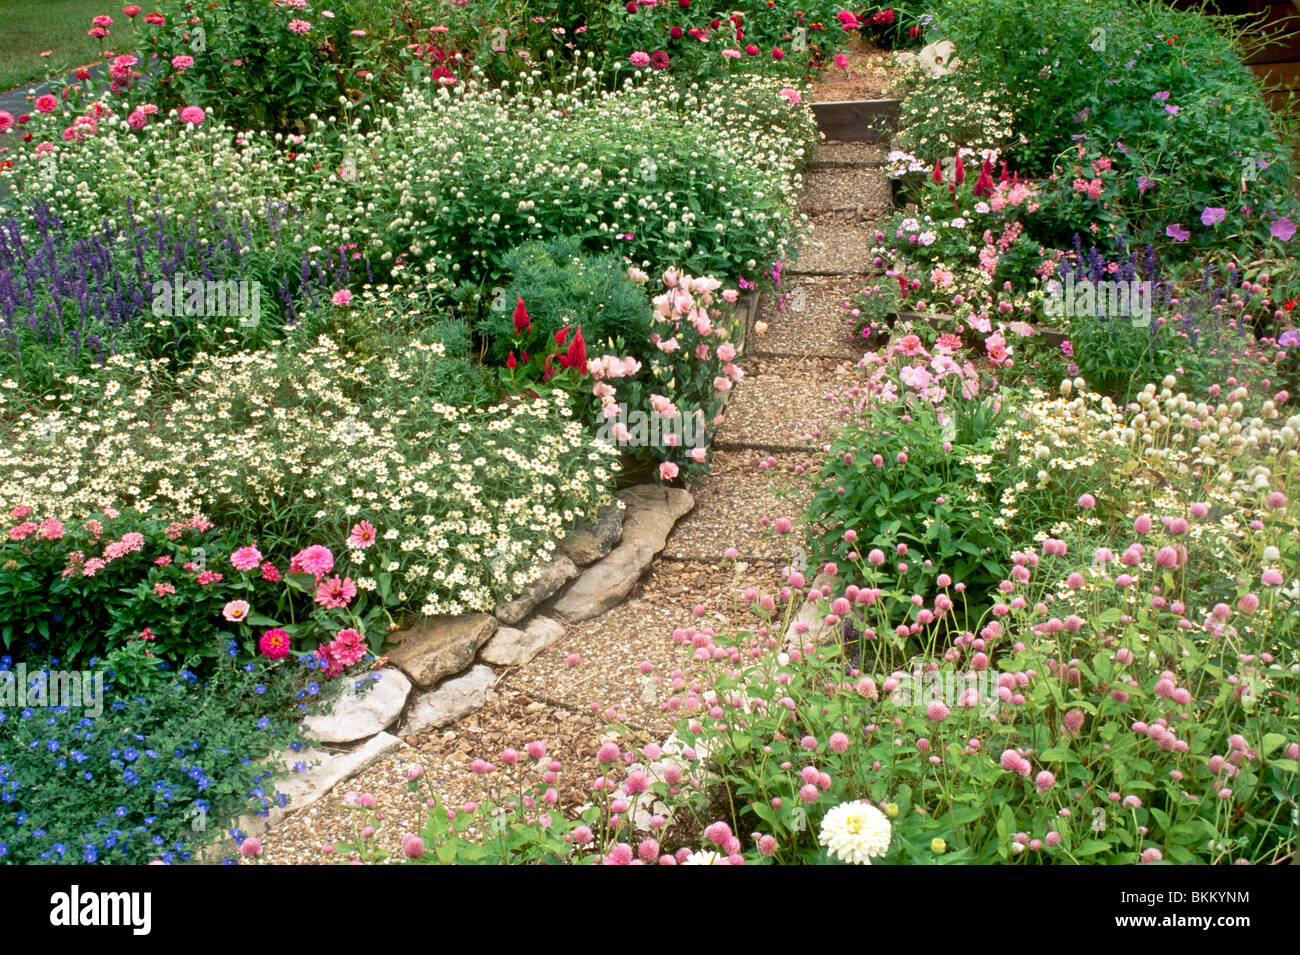 Bauerngarten mit Weg gemacht von Pflastersteinen und Steinbruch Rock Schaffung einen stabilen Gehweg durch einen bunten blühenden Garten Stockfoto